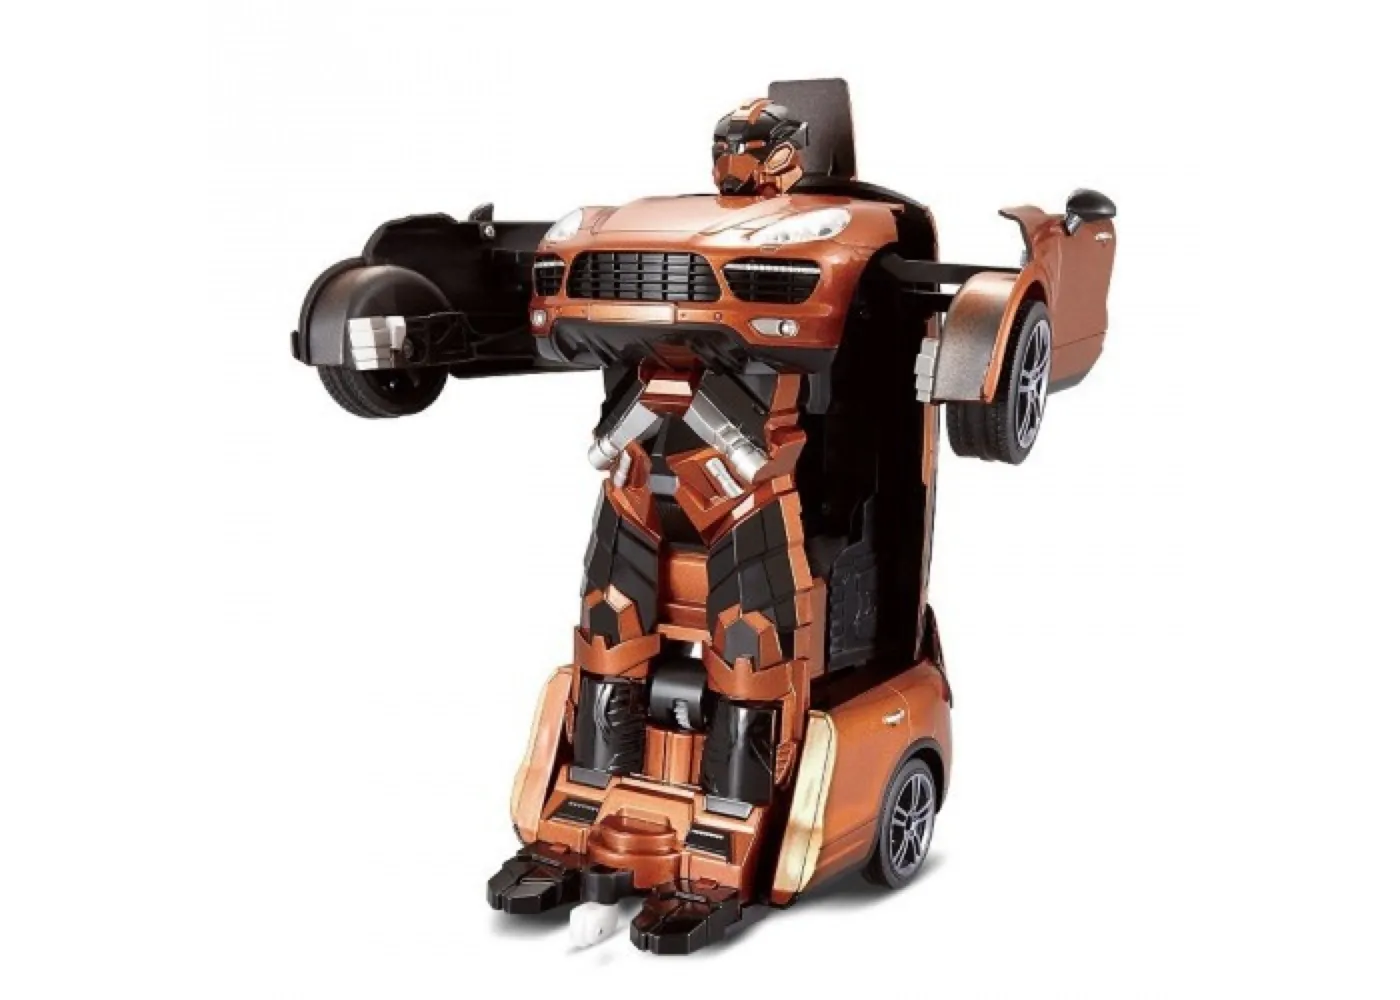 1toy Робот на р/у 2,4GHz, трансформирующийся в машину, 30 см, оранжевый